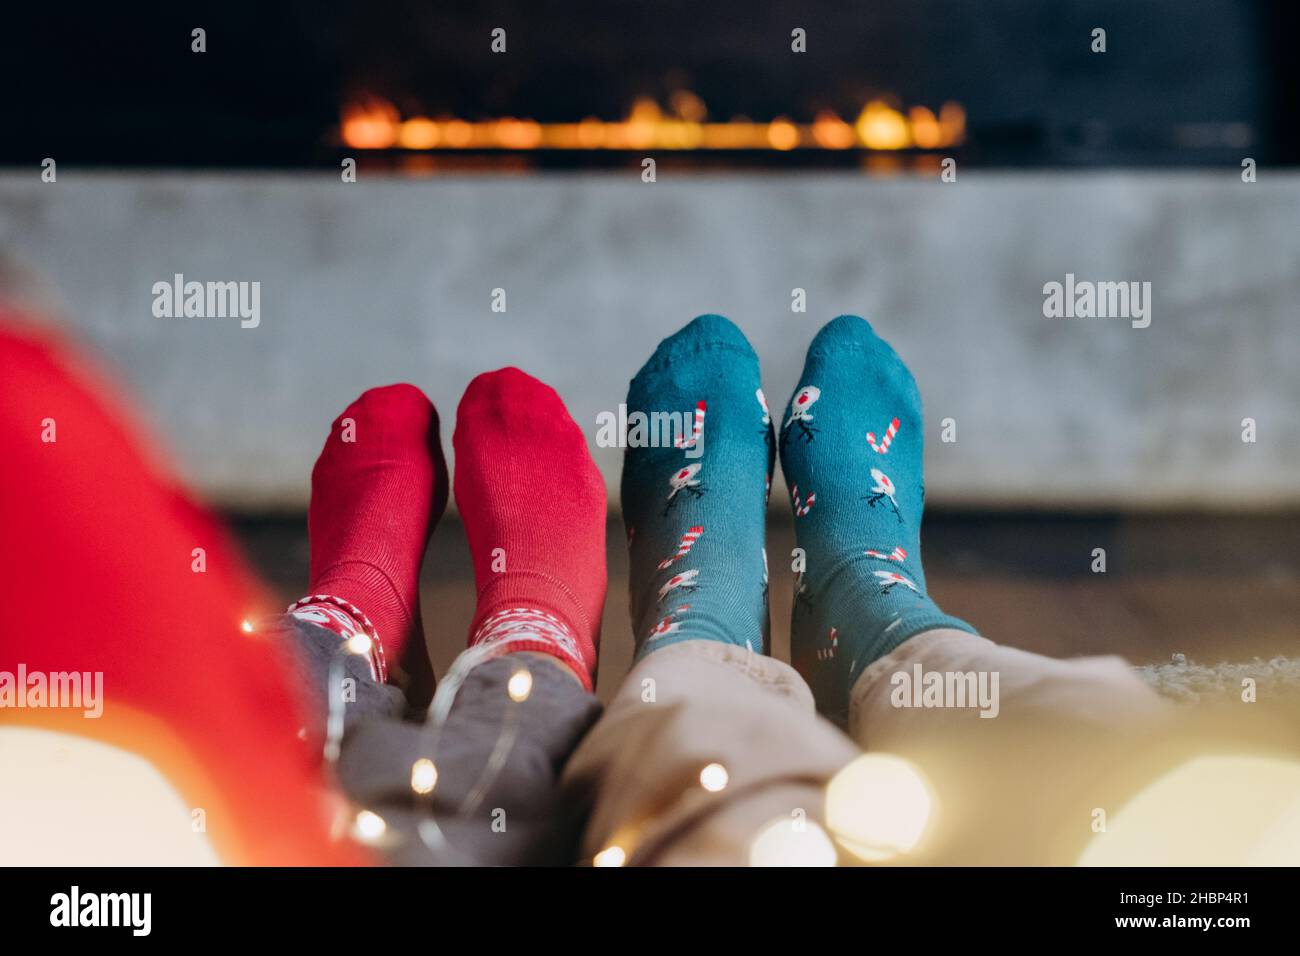 noël coziness sur le fond d'une cheminée électrique, un couple en chaussettes rouges et vertes avec une guirlande, minimalisme Banque D'Images